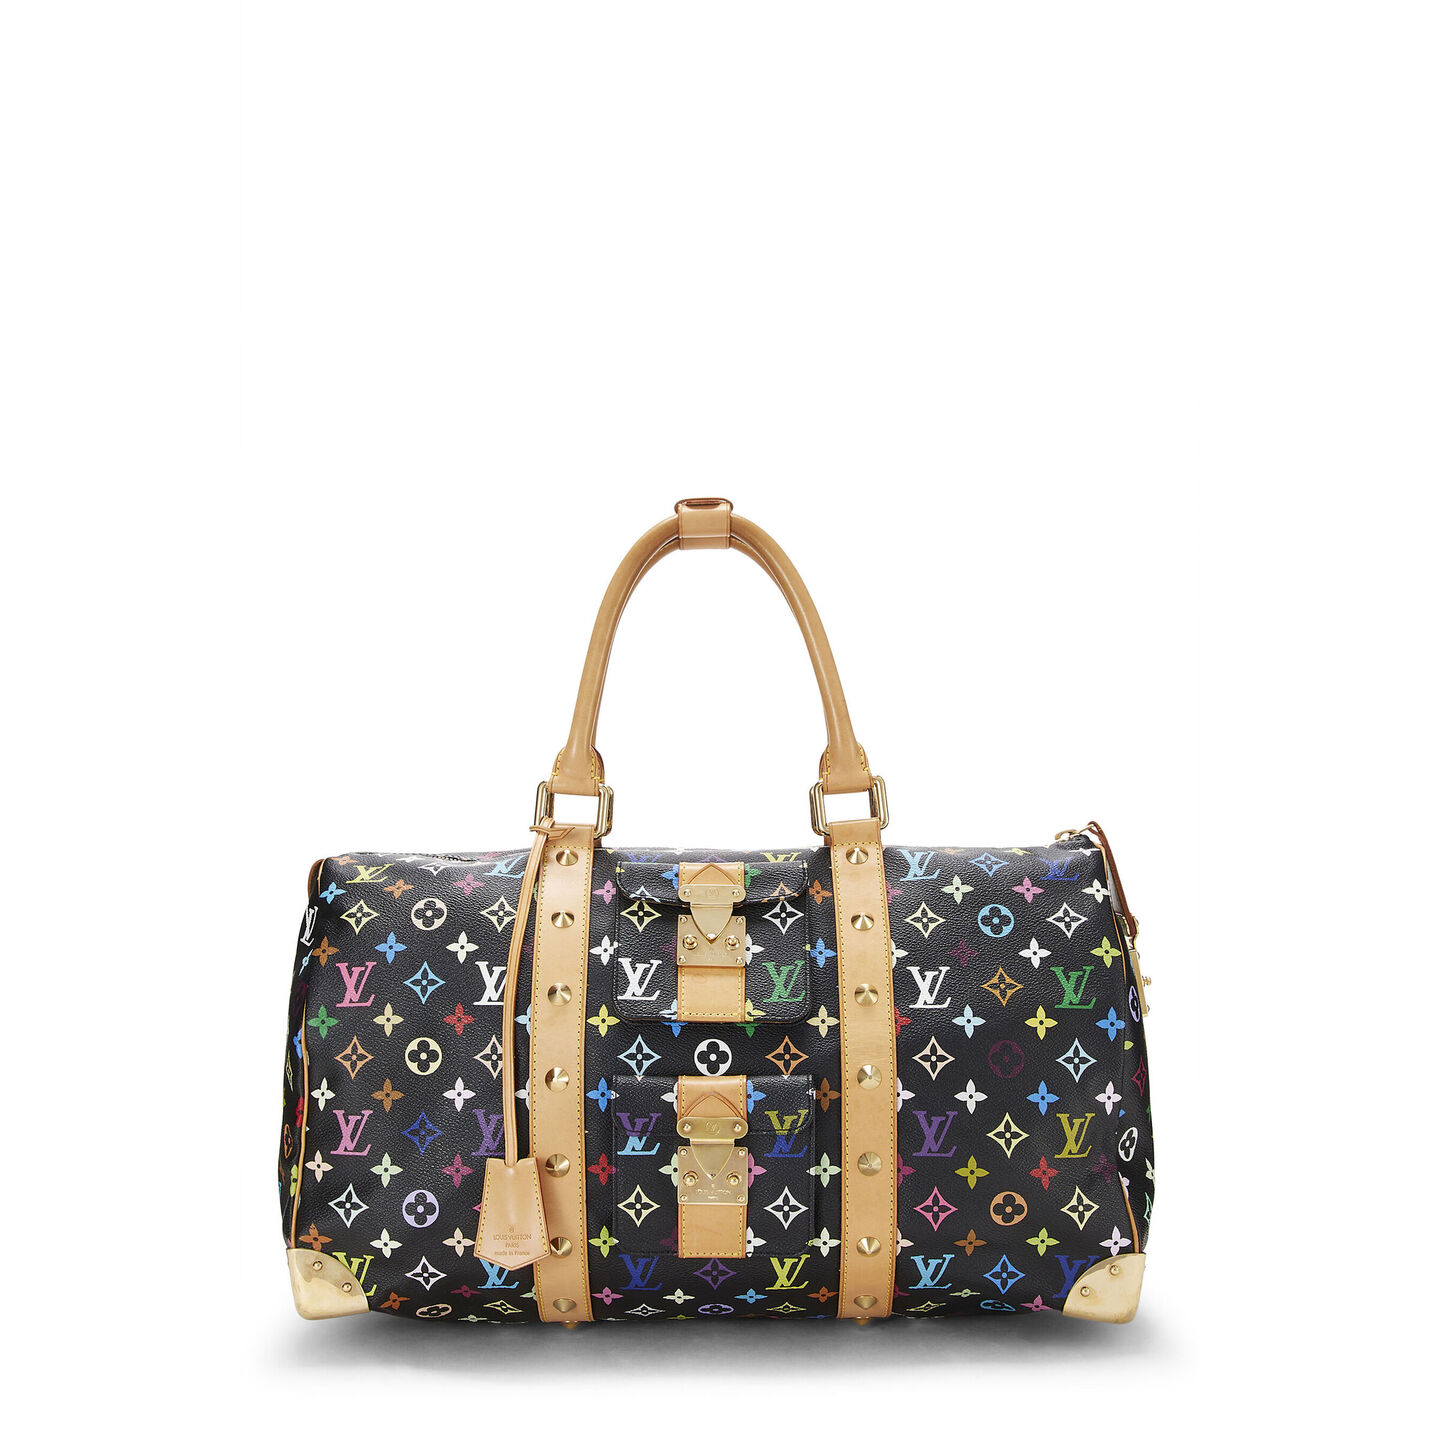 Louis Vuitton MACASSAR KEEPALL 55 ultimate duffle bag for men! 